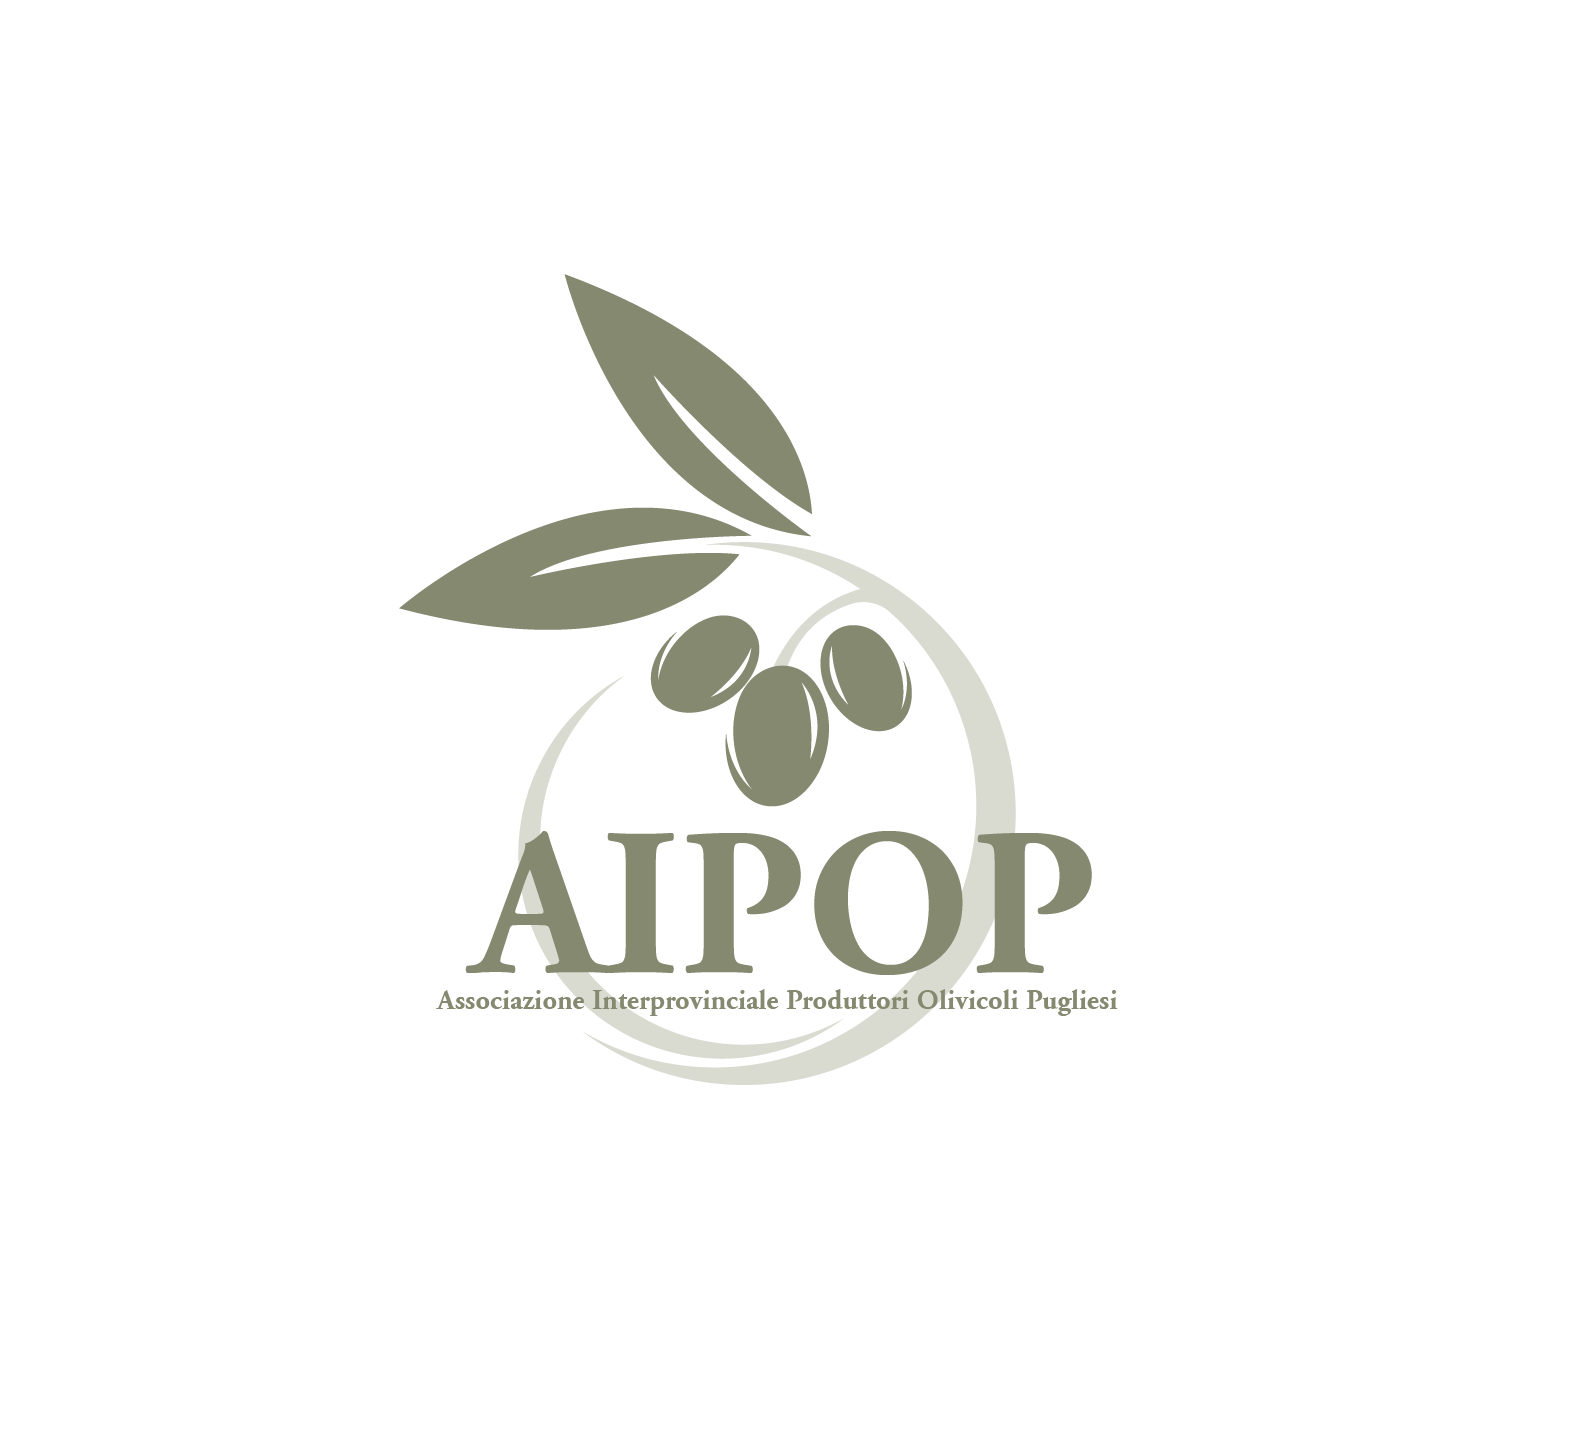 AIPOP | Associazione Interprovinciale Produttori Olivicoli Pugliesi